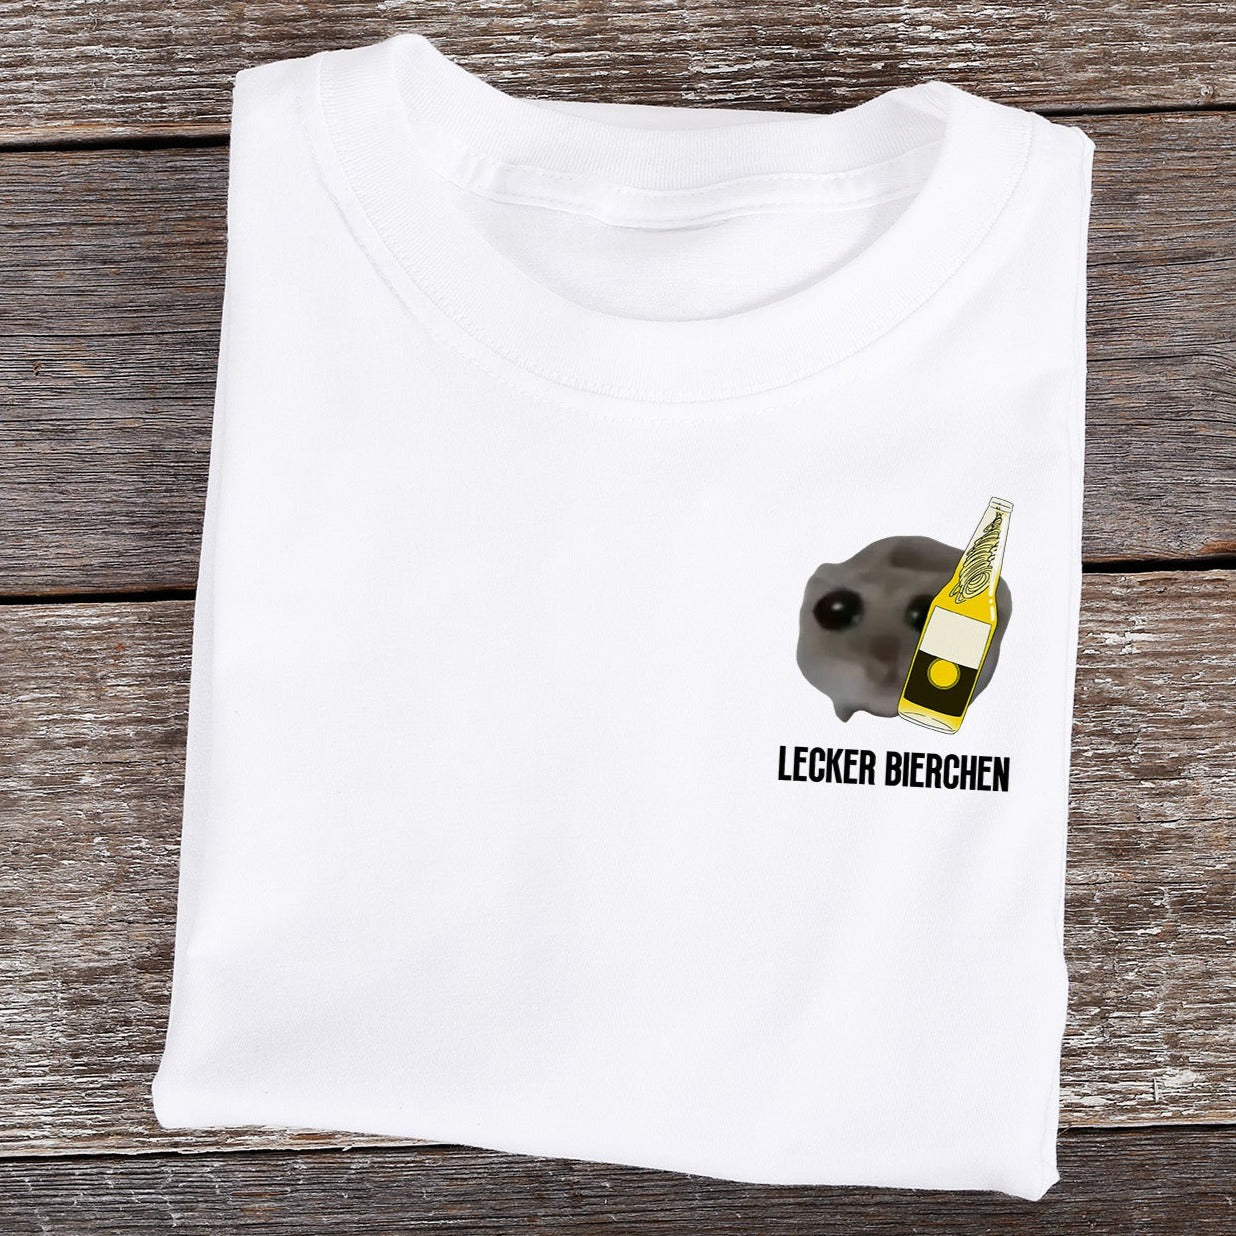 LECKER BIERCHEN MEME - Premium Shirt